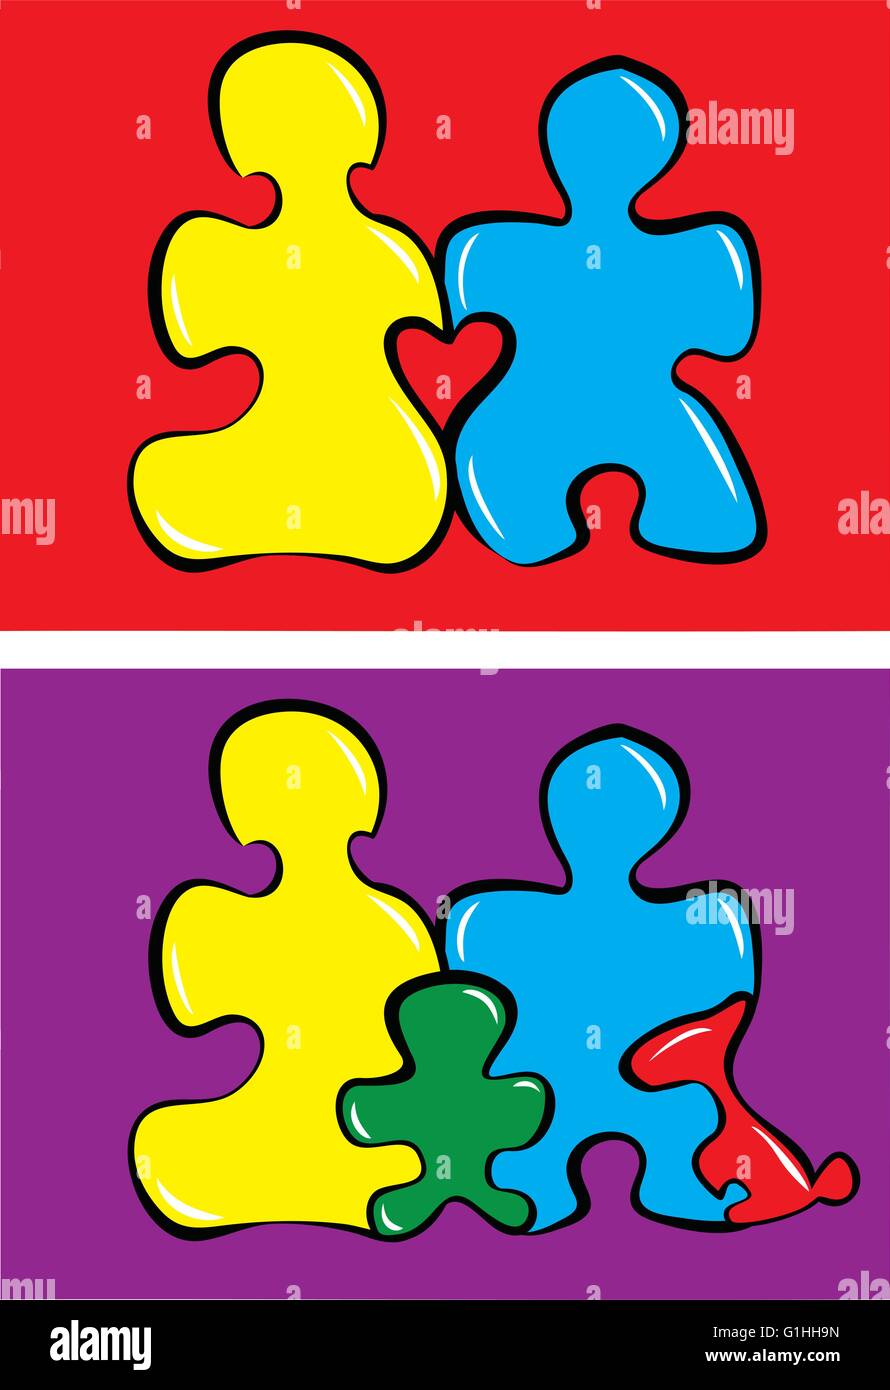 Illustrazione Vettoriale del concetto di famiglia fatta da pezzi di un puzzle Illustrazione Vettoriale